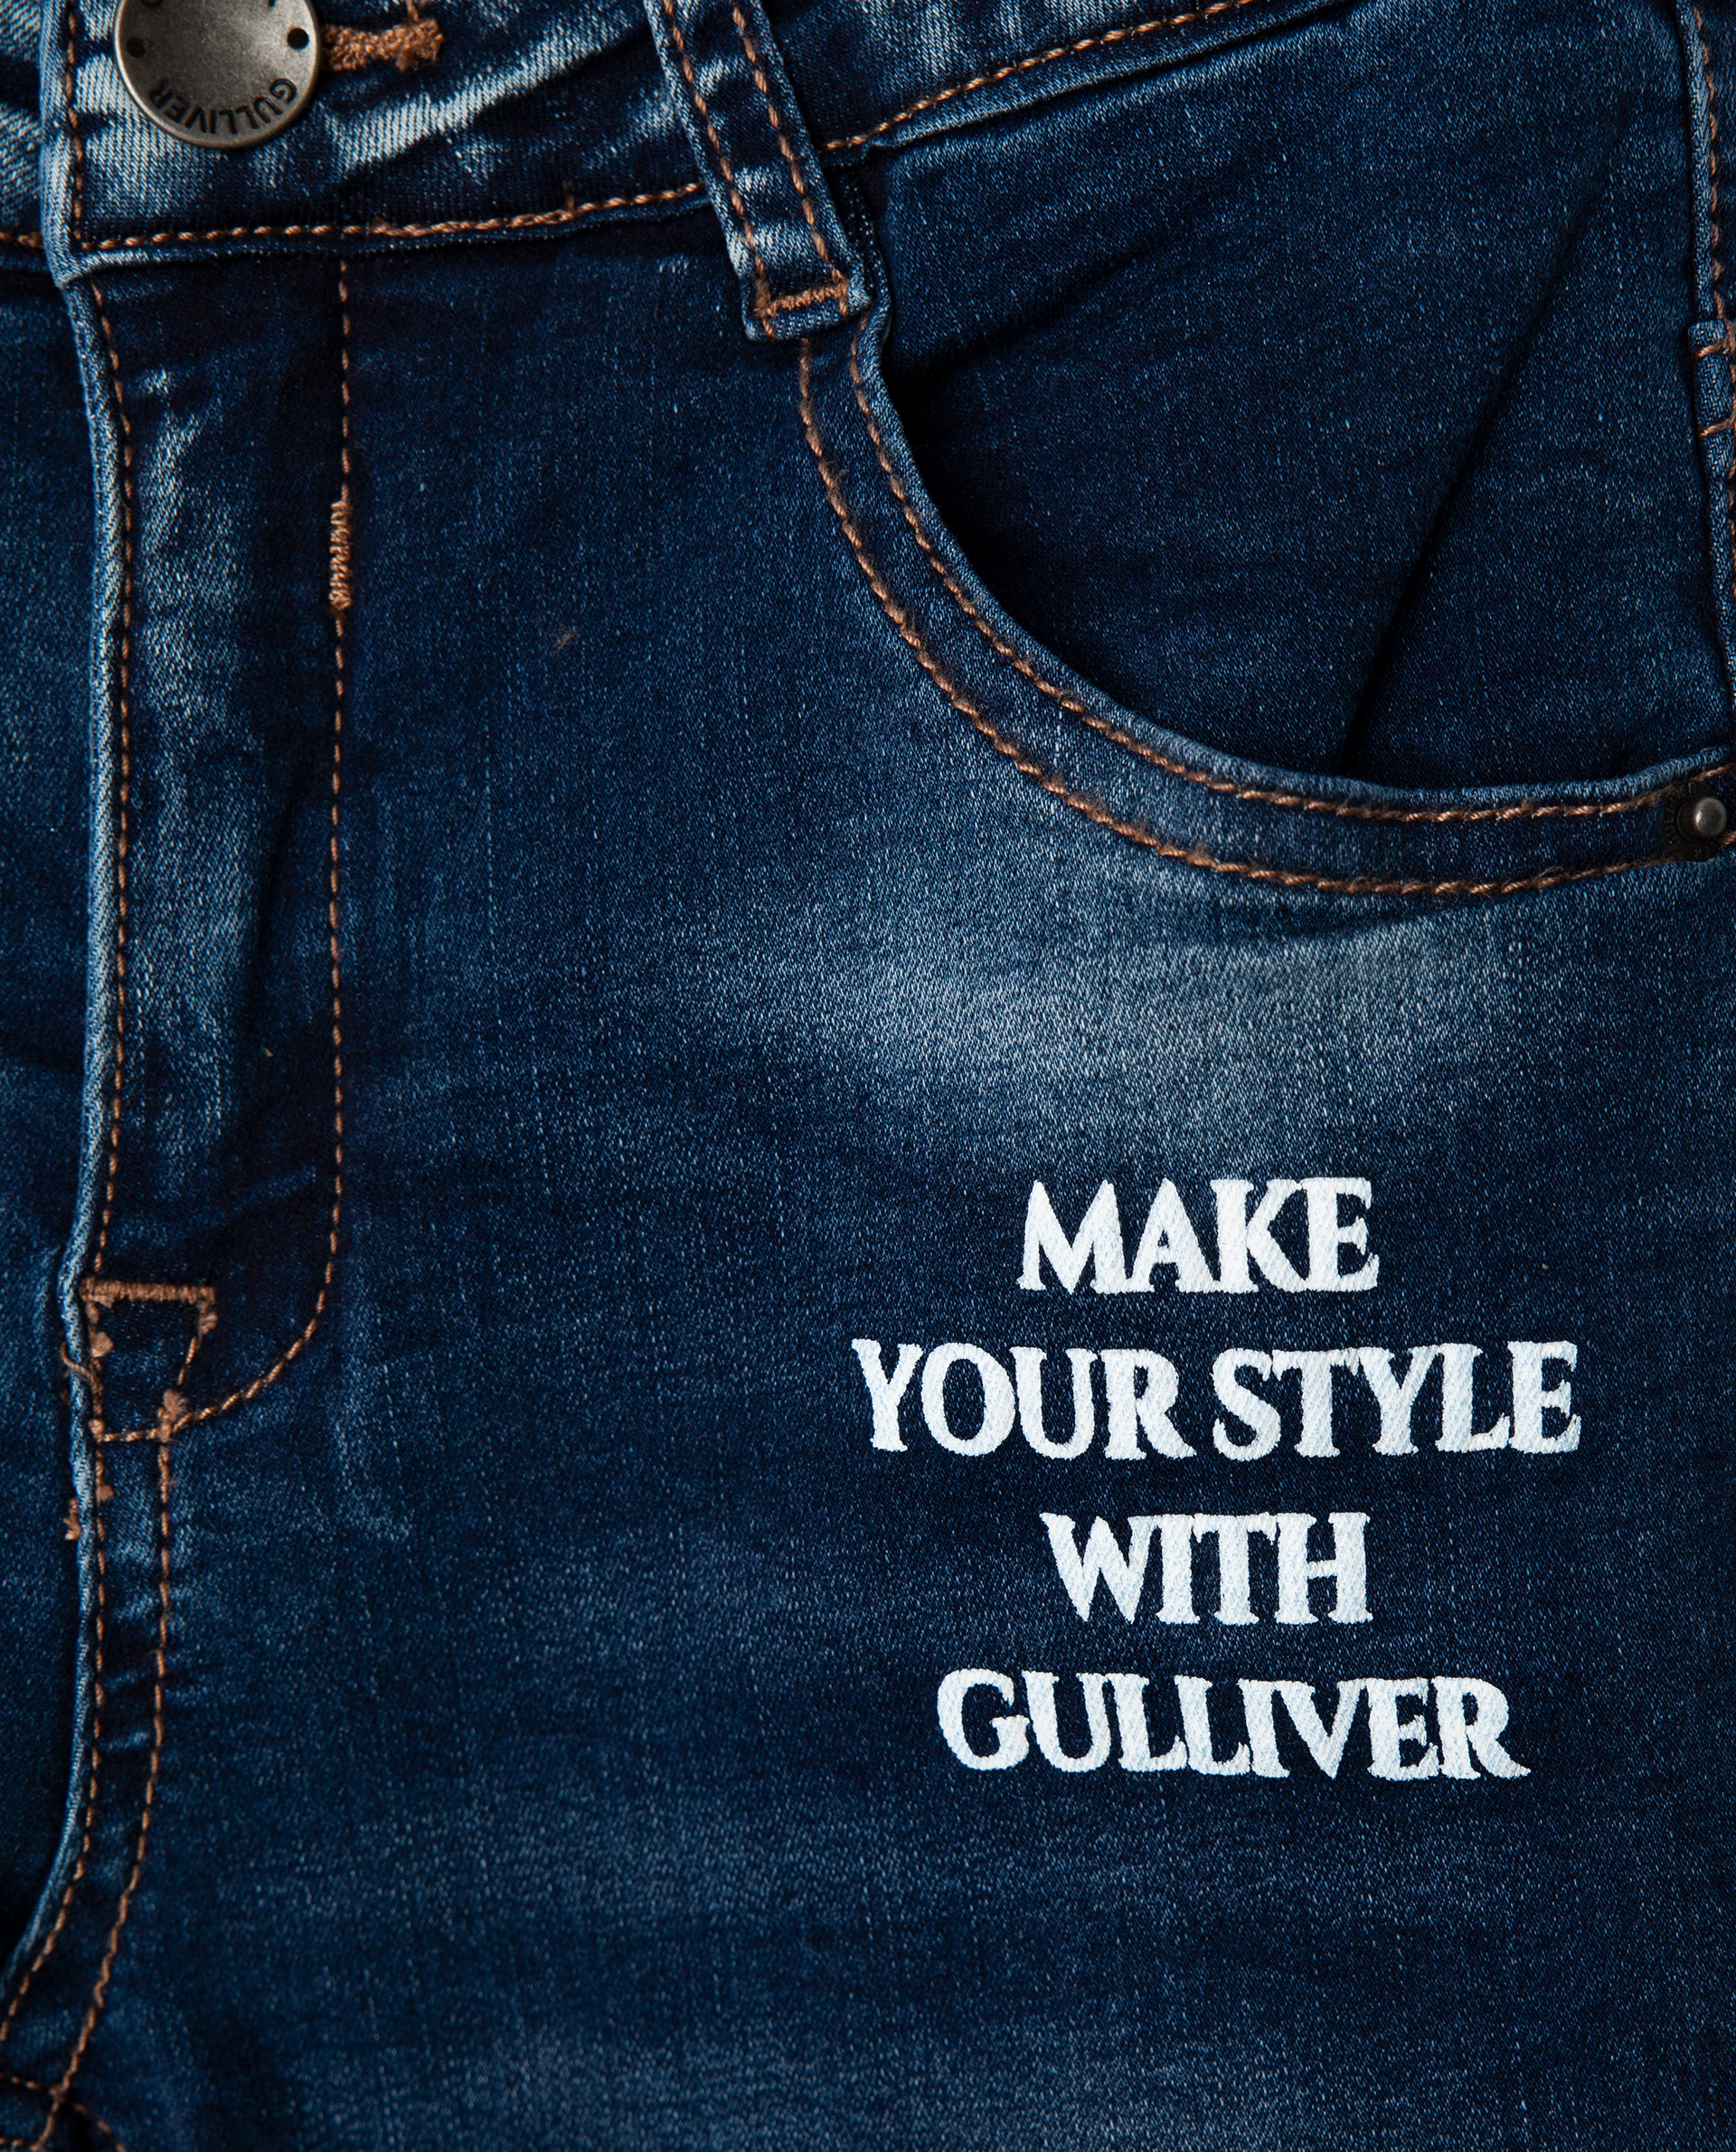 Голубые джинсы утепленные Gulliver 22002GMC6402, размер 116, цвет голубой regular fit / прямые - фото 3